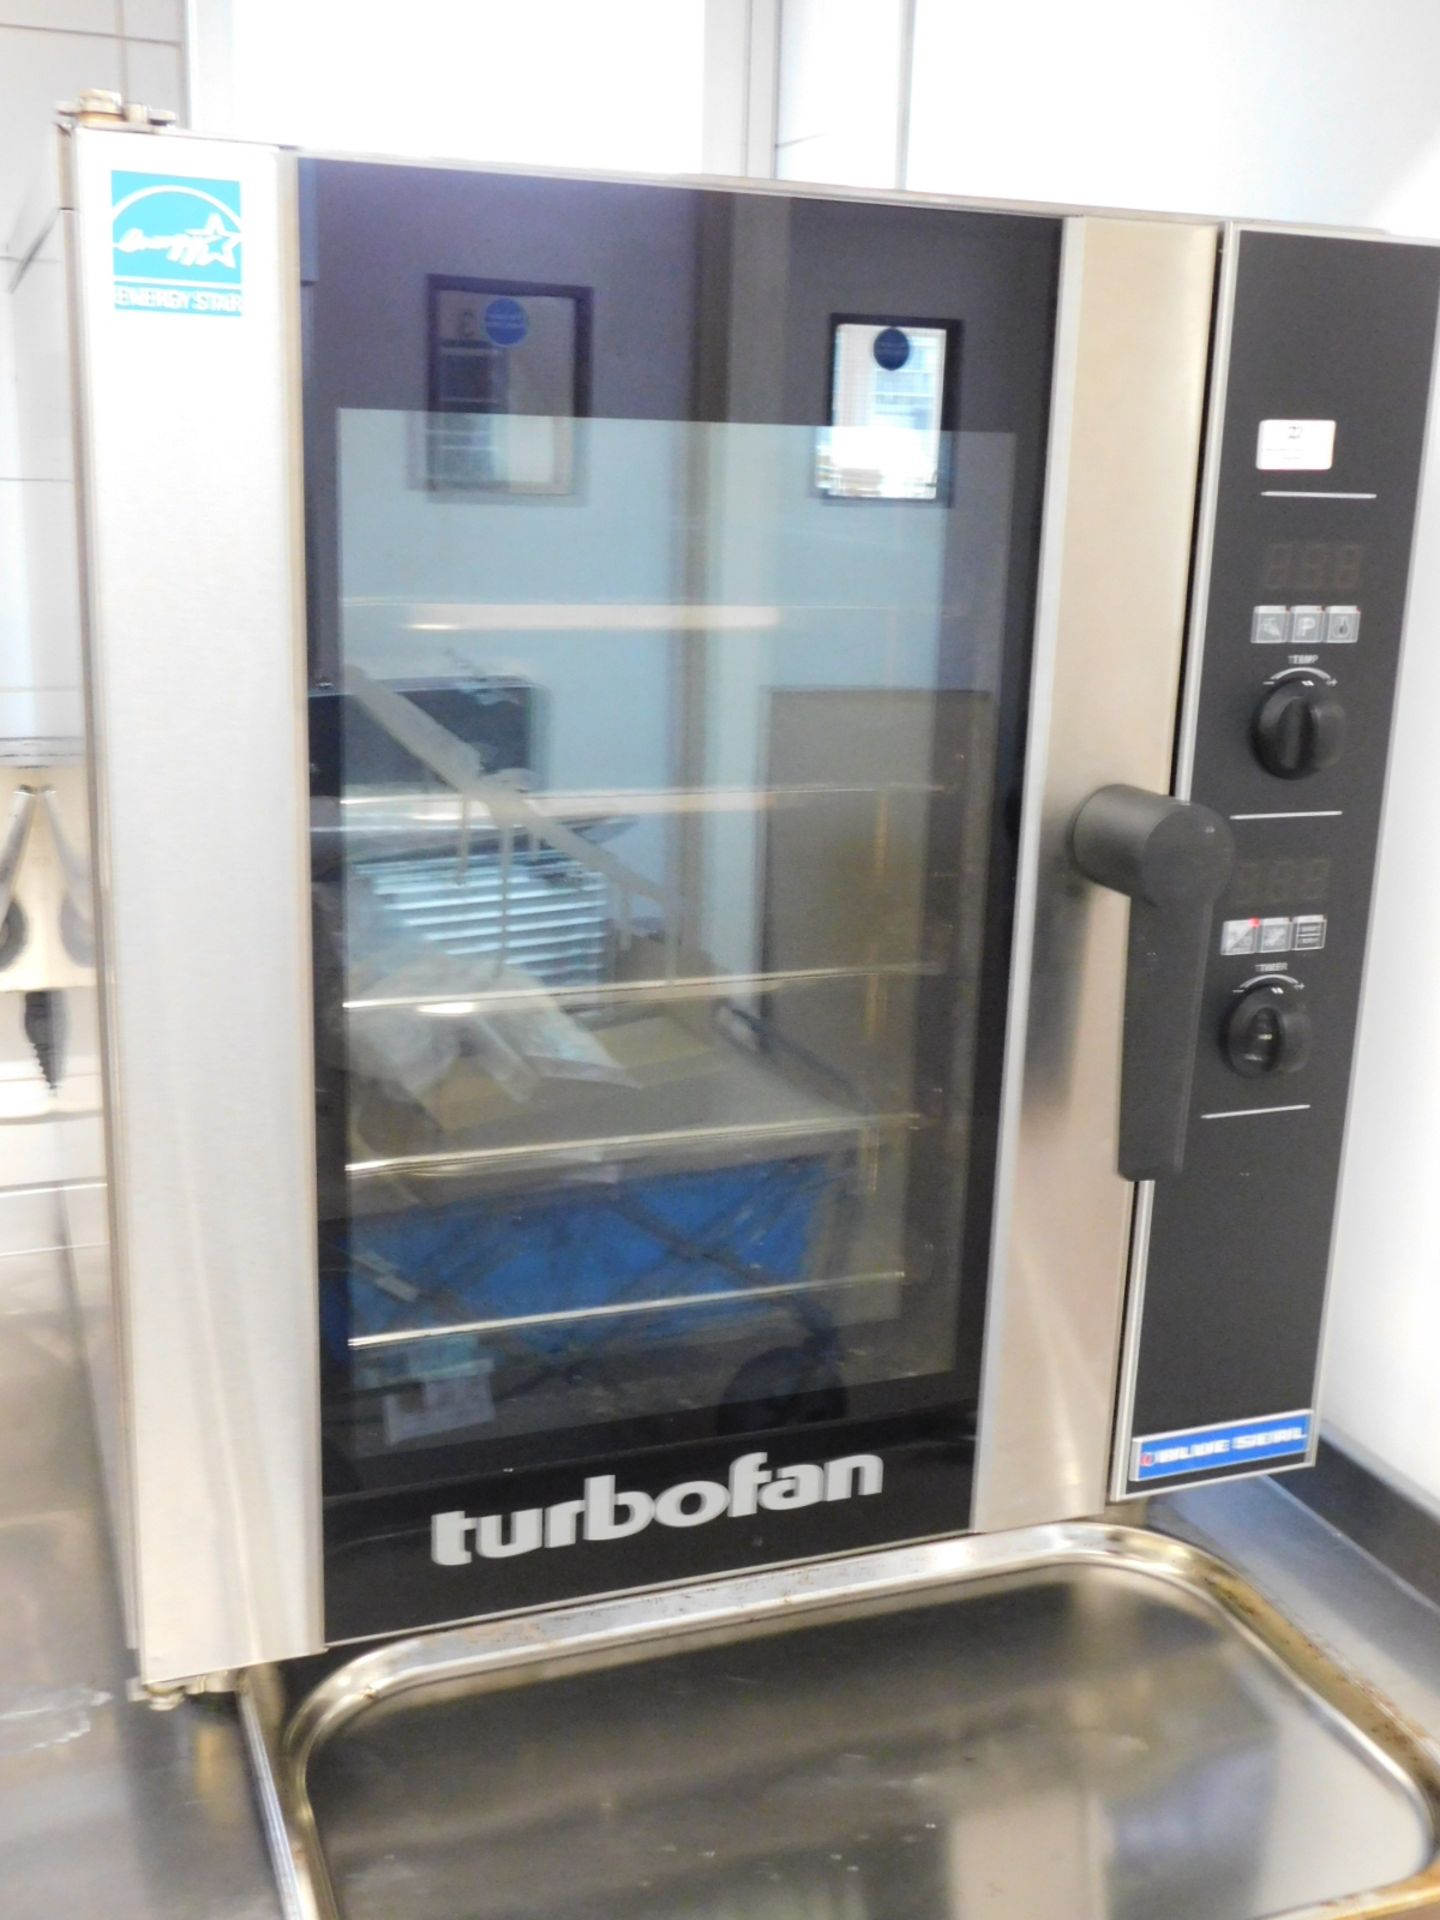 * Blueseal TurboFan Oven E33D5 5 tray turbo fan oven 600w x 700d x 720h